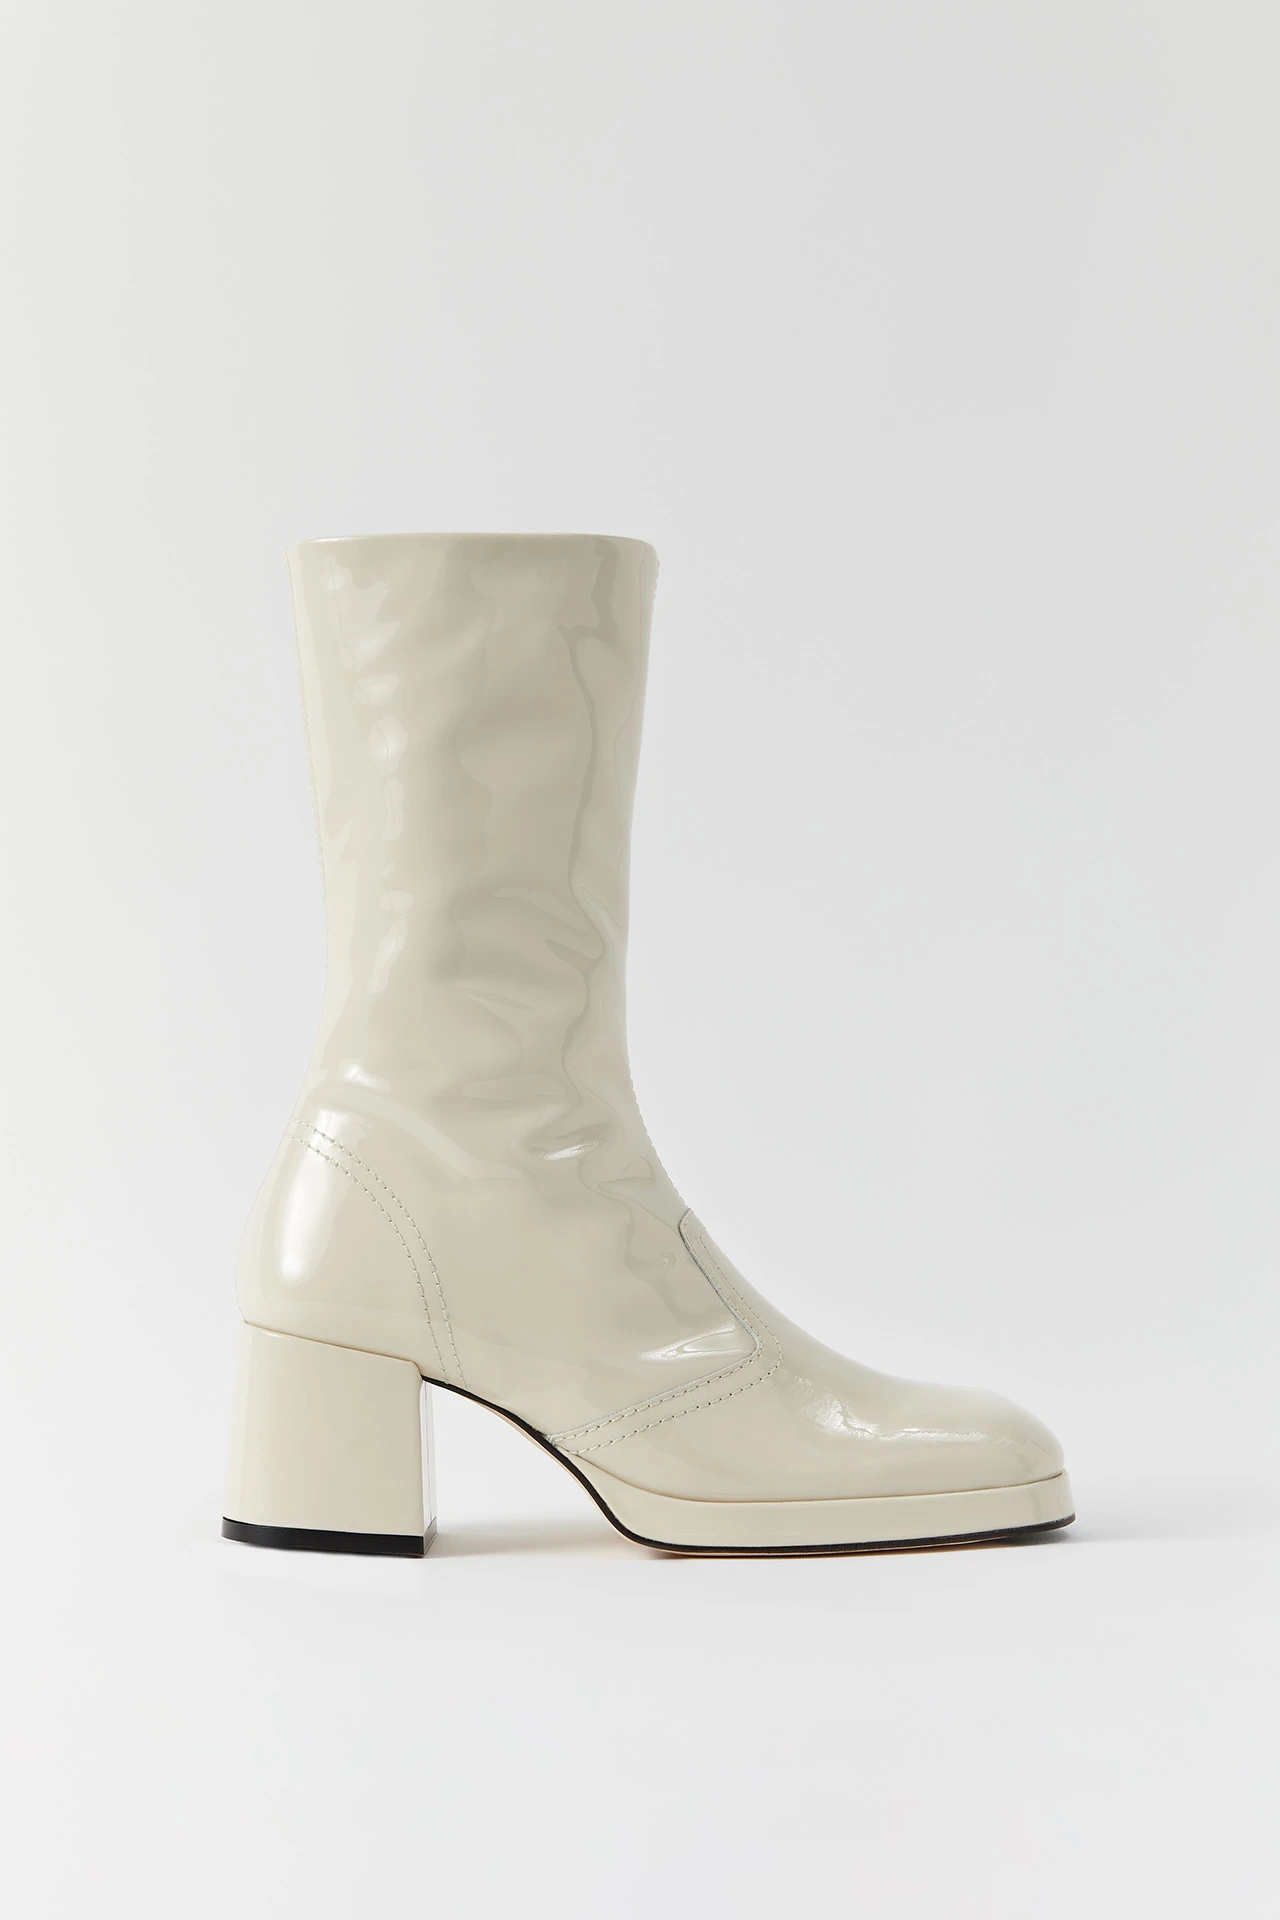 miista-cass-beige-patent-boots-1